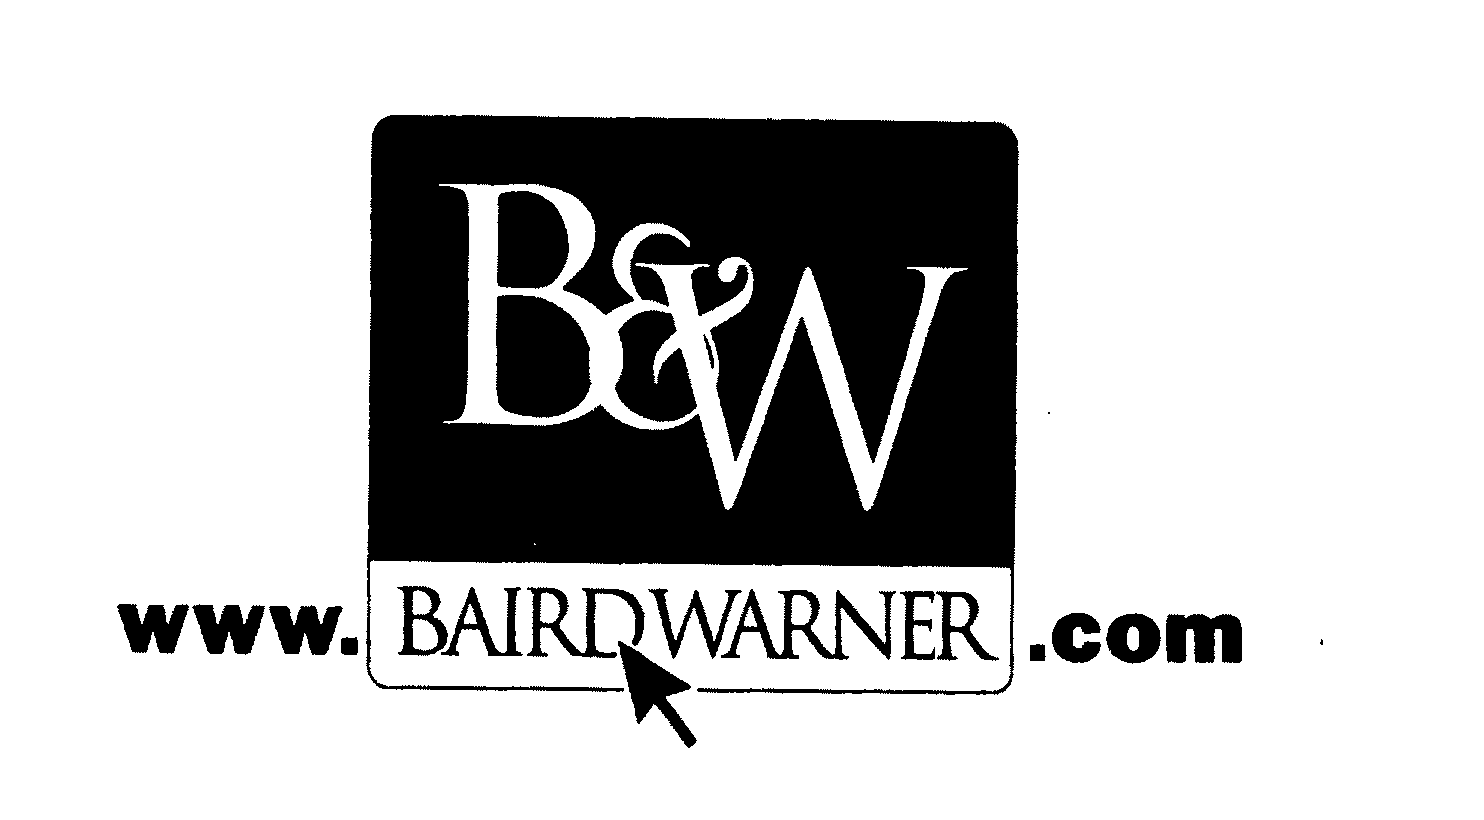  B&amp;W WWW.BAIRDWARNER.COM